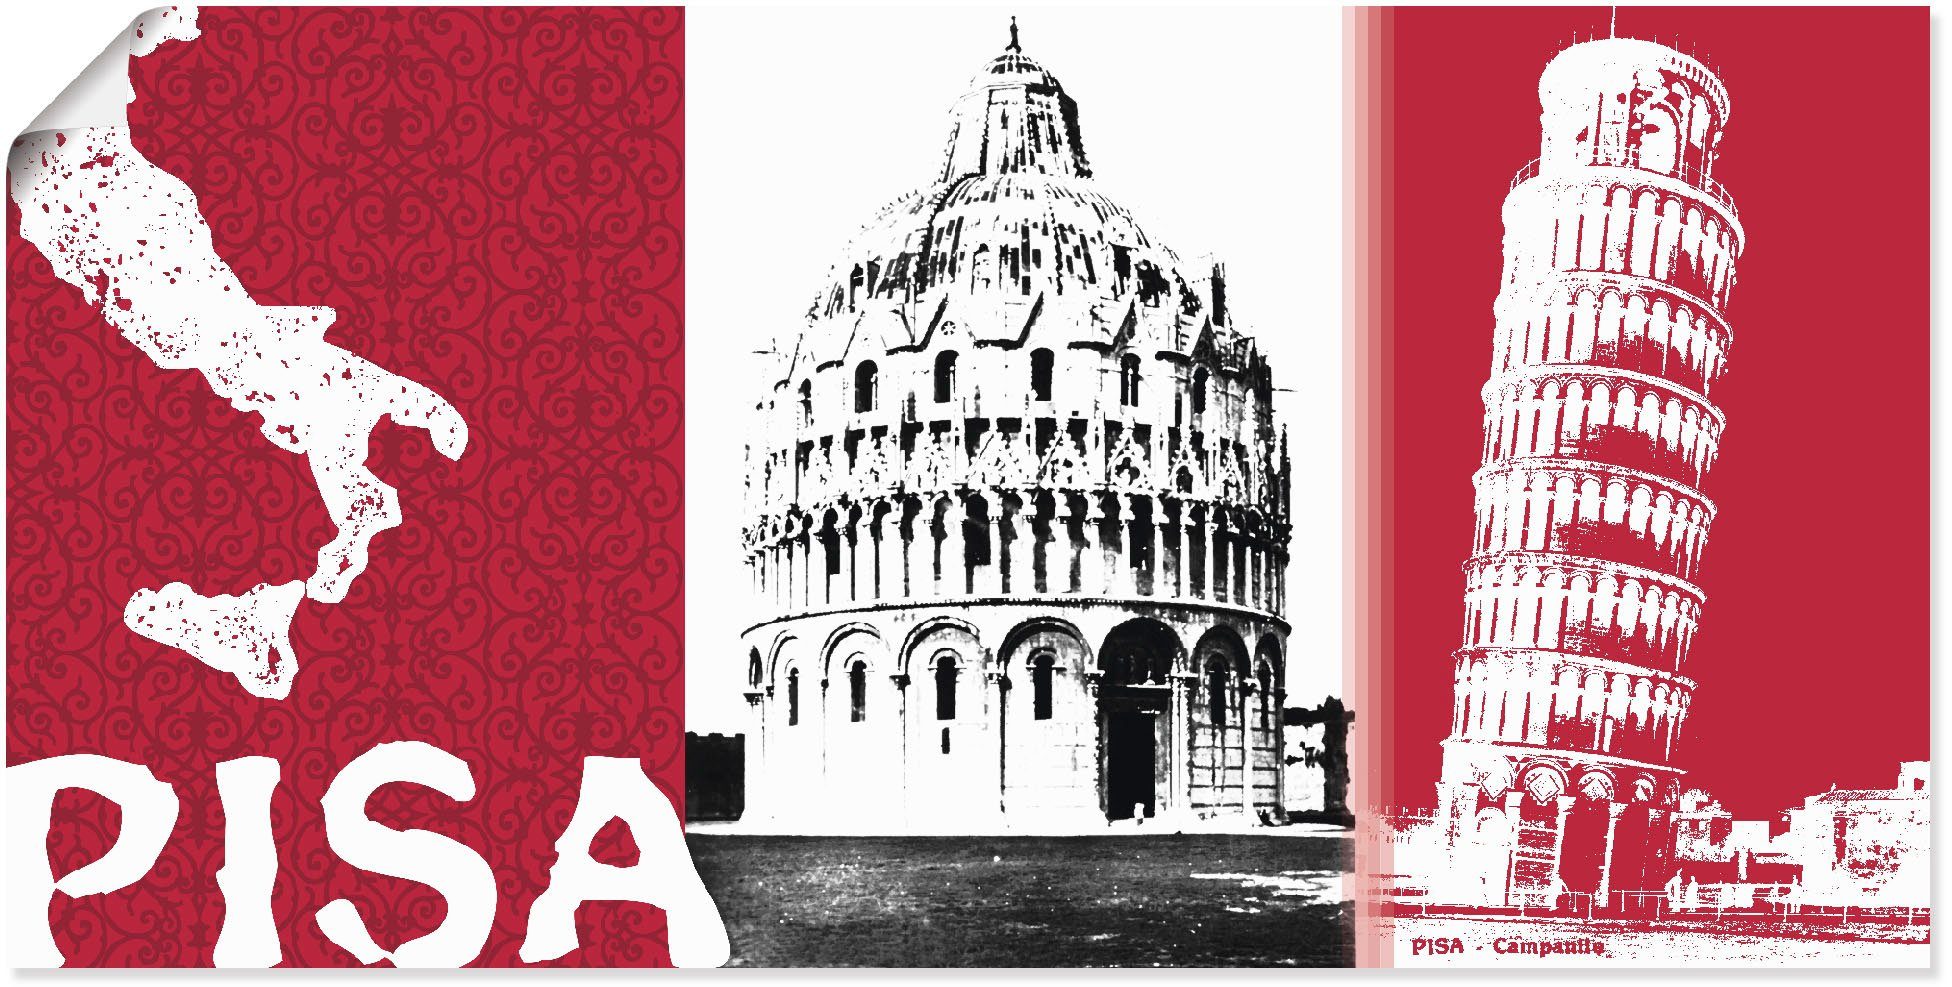 Artland Artprint Pisa in vele afmetingen & productsoorten - artprint van aluminium / artprint voor buiten, artprint op linnen, poster, muursticker / wandfolie ook geschikt voor de